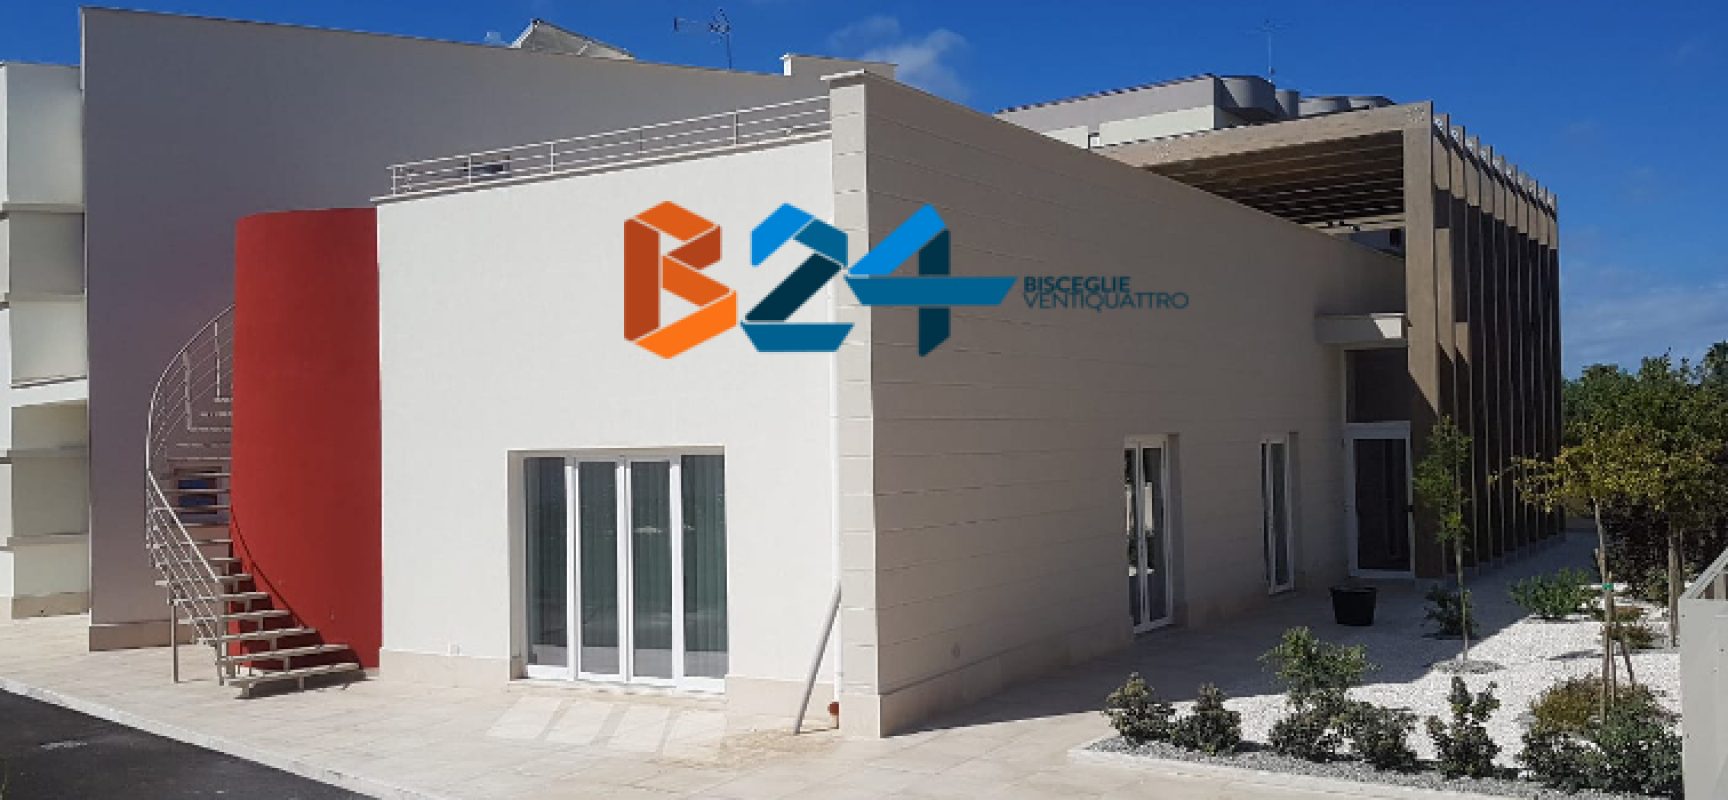 Cooperativa Temenos inaugura centro sociale polivalente: “Modernità e socializzazione”